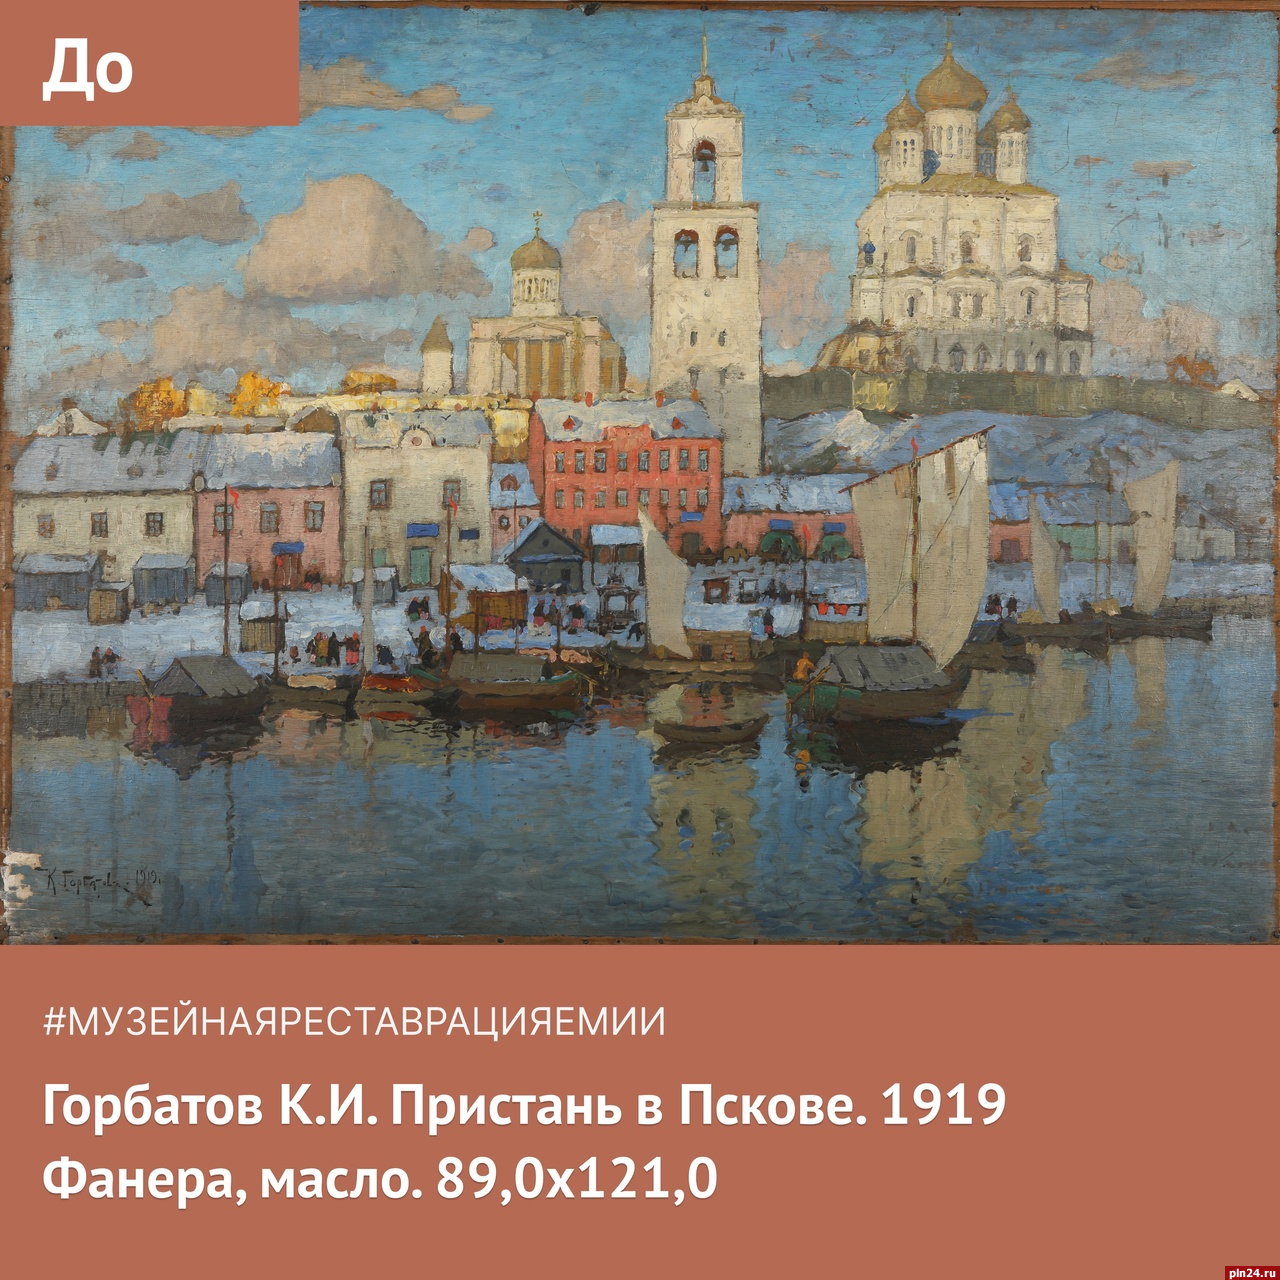 Отреставрированную картину с изображением Пскова впервые покажут на выставке в Екатеринбурге